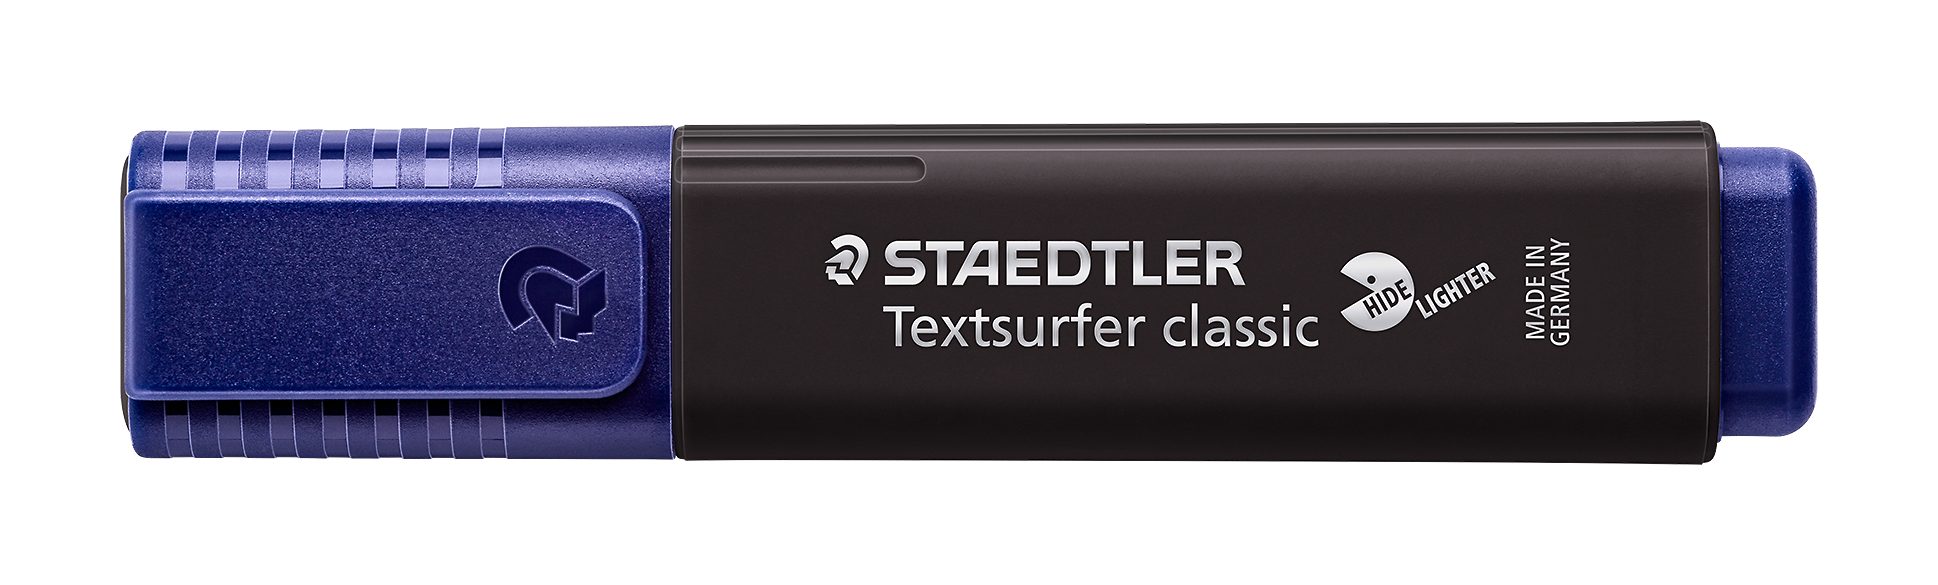 STAEDTLER Marker Staedtler Textsurfer classic colors schwarz 364 C-9 Leuchtstift, INK JET SAFE